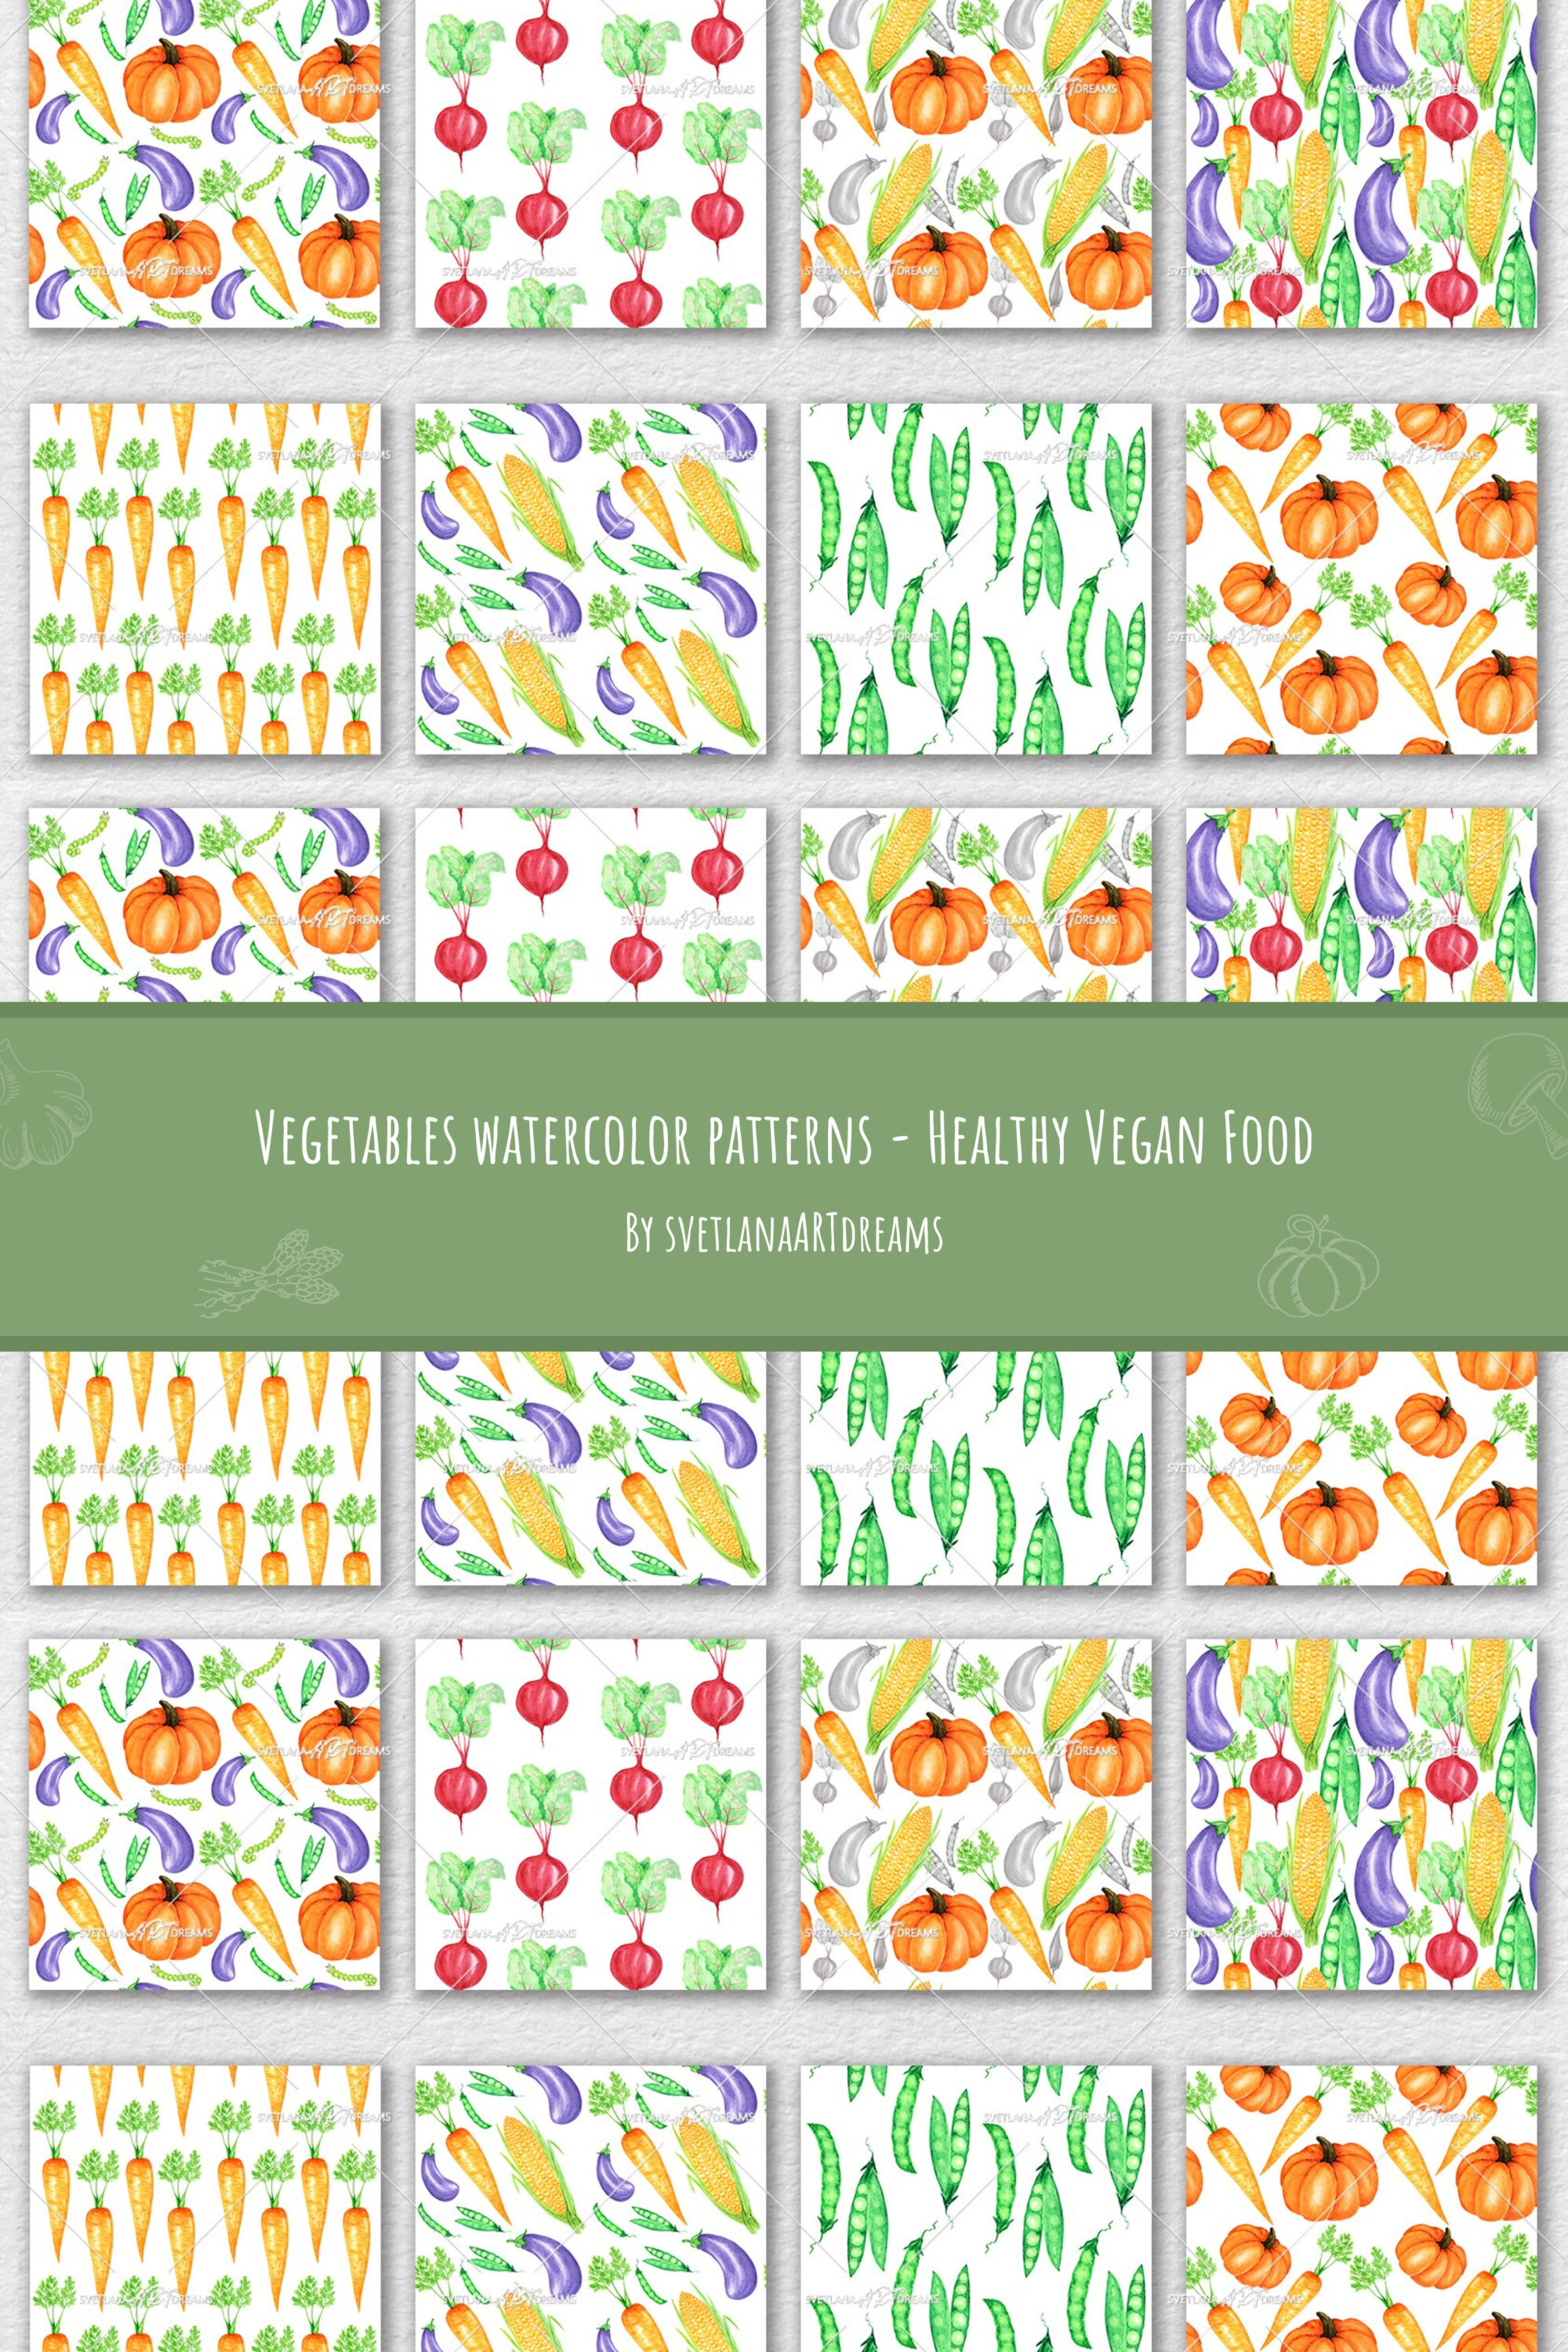 Vegetables watercolor patterns healthy vegan food of pinterest.